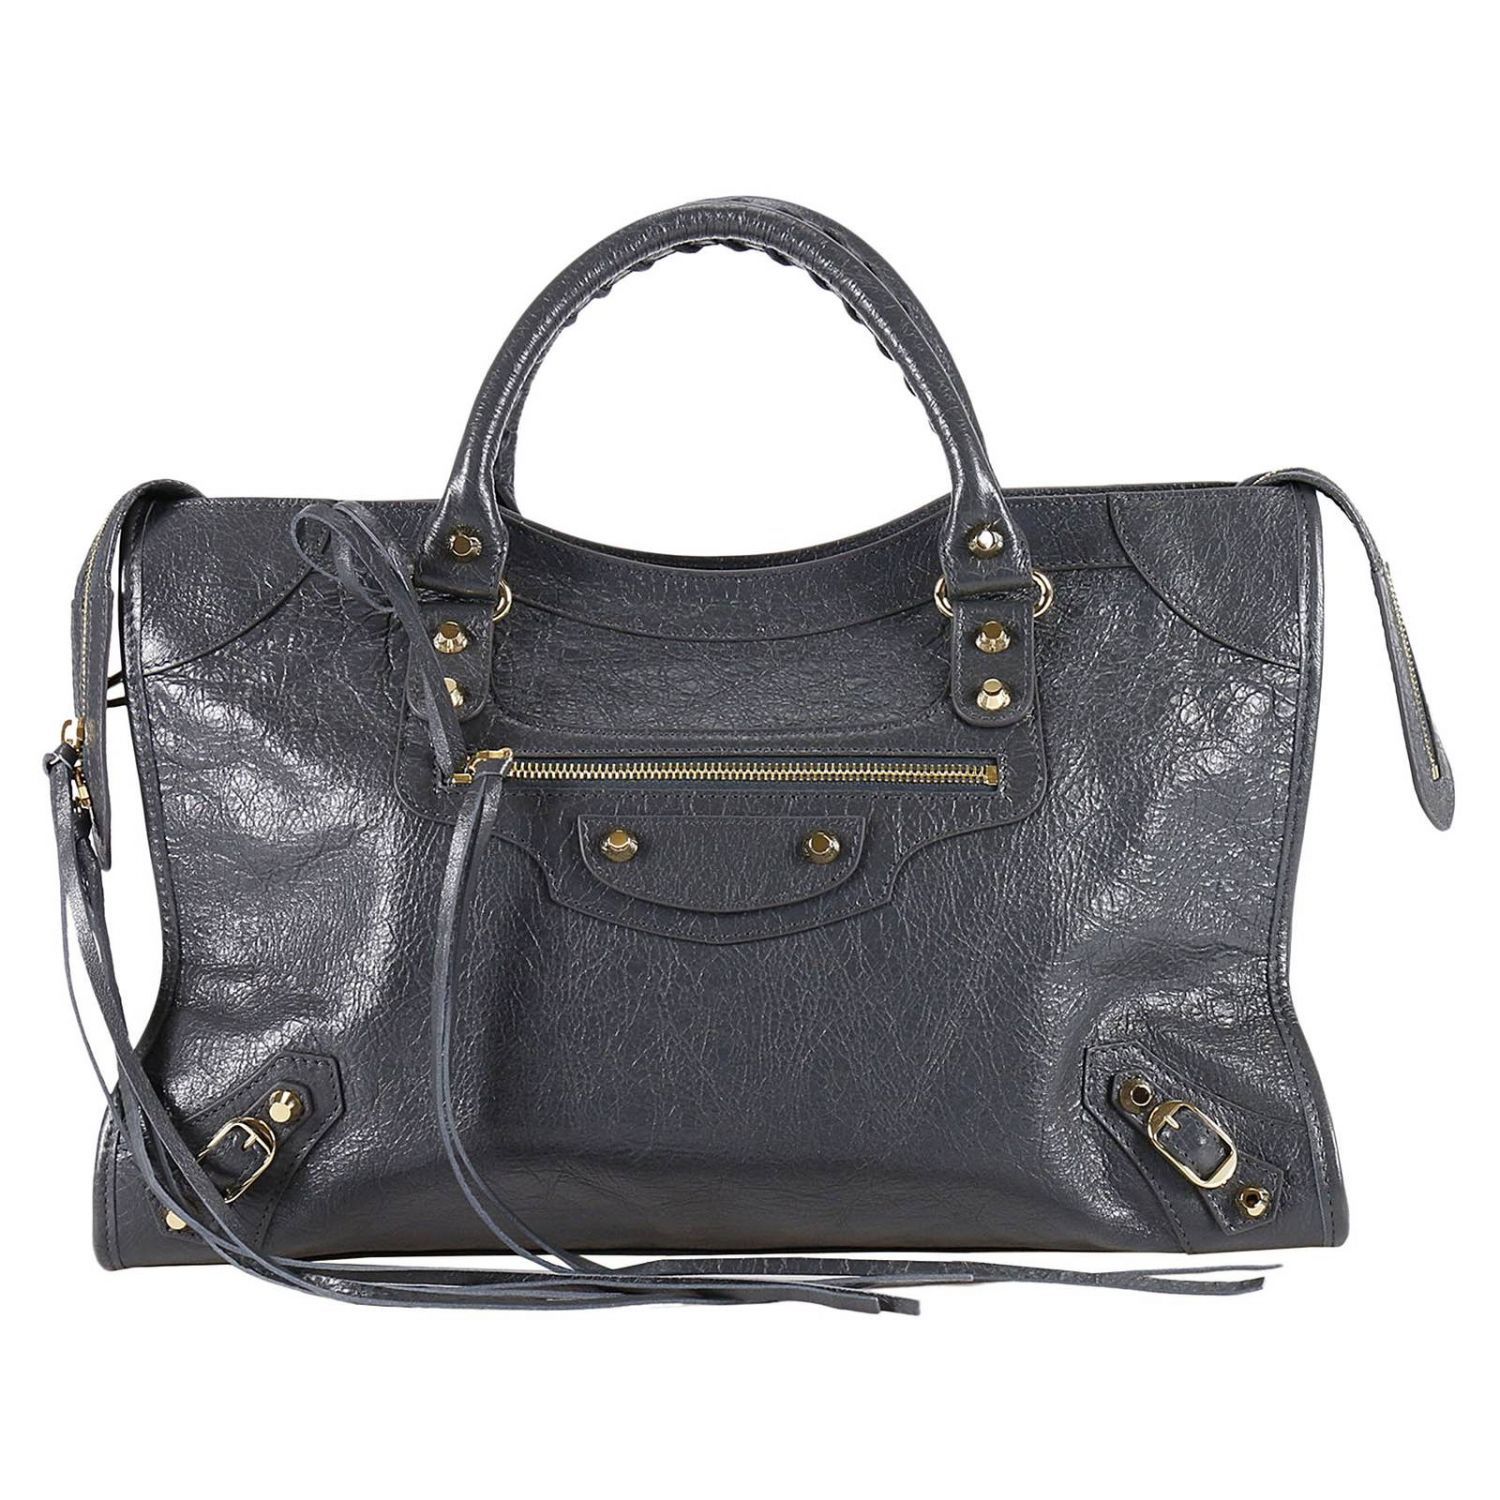 Balenciaga - Handbag Handbag Women Balenciaga - 115748 D94JG, Women's ...